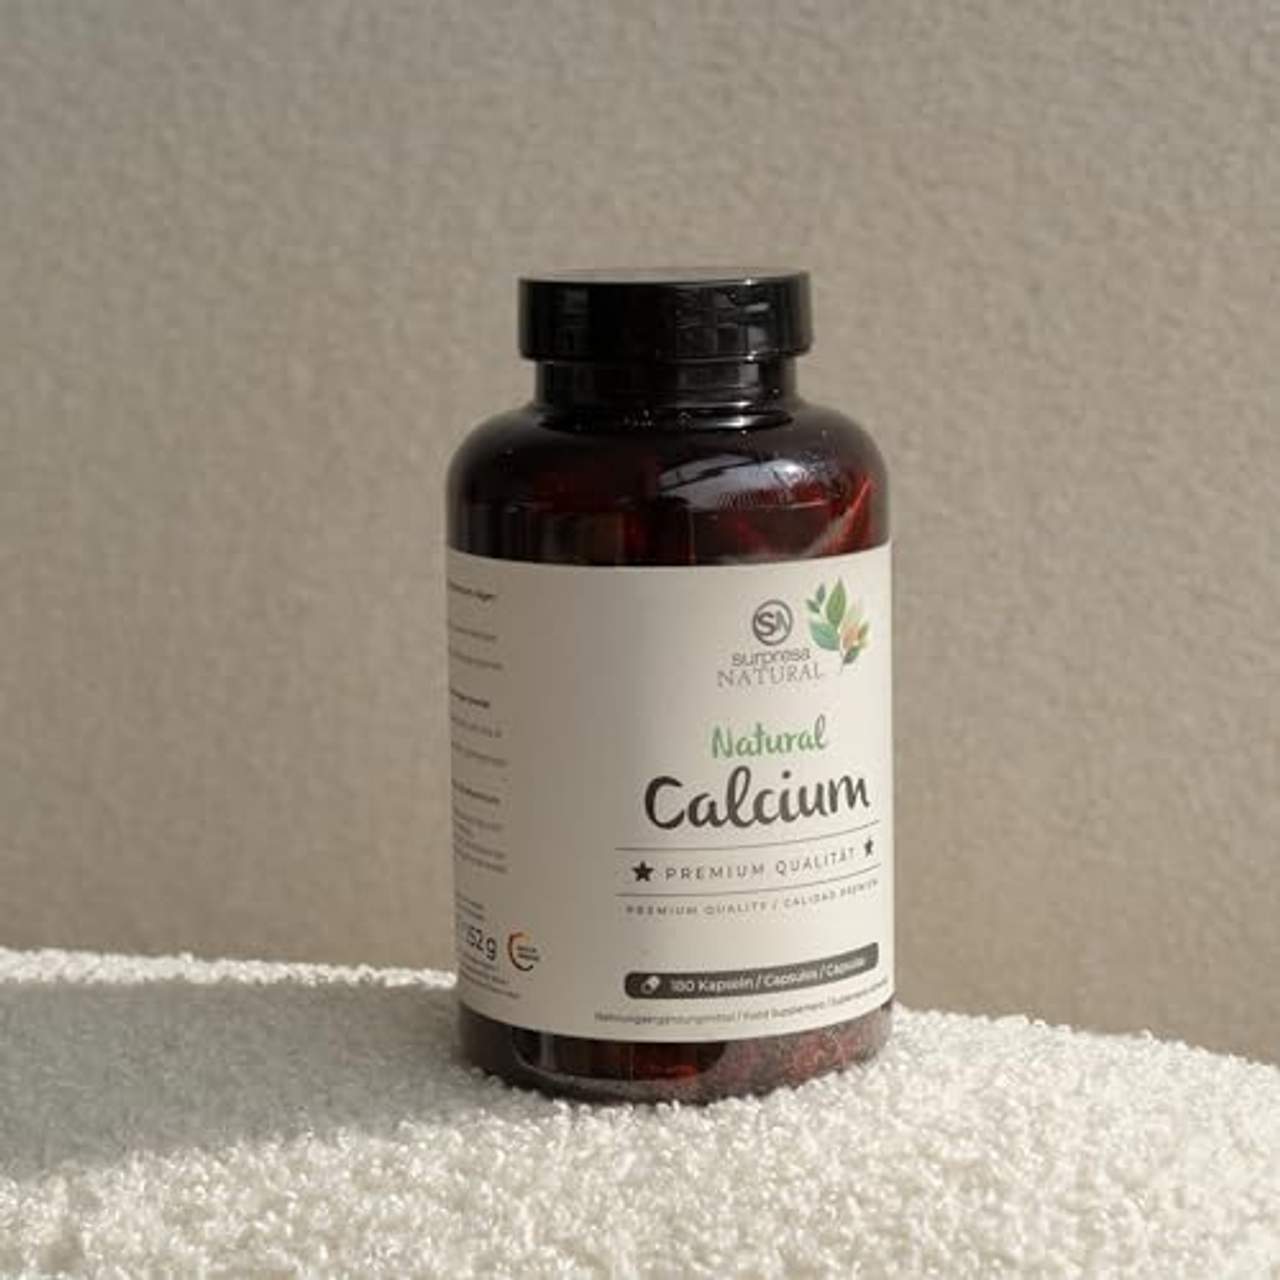 Surpresa Natural Natural Calcium 180 hochdosierte Kapseln